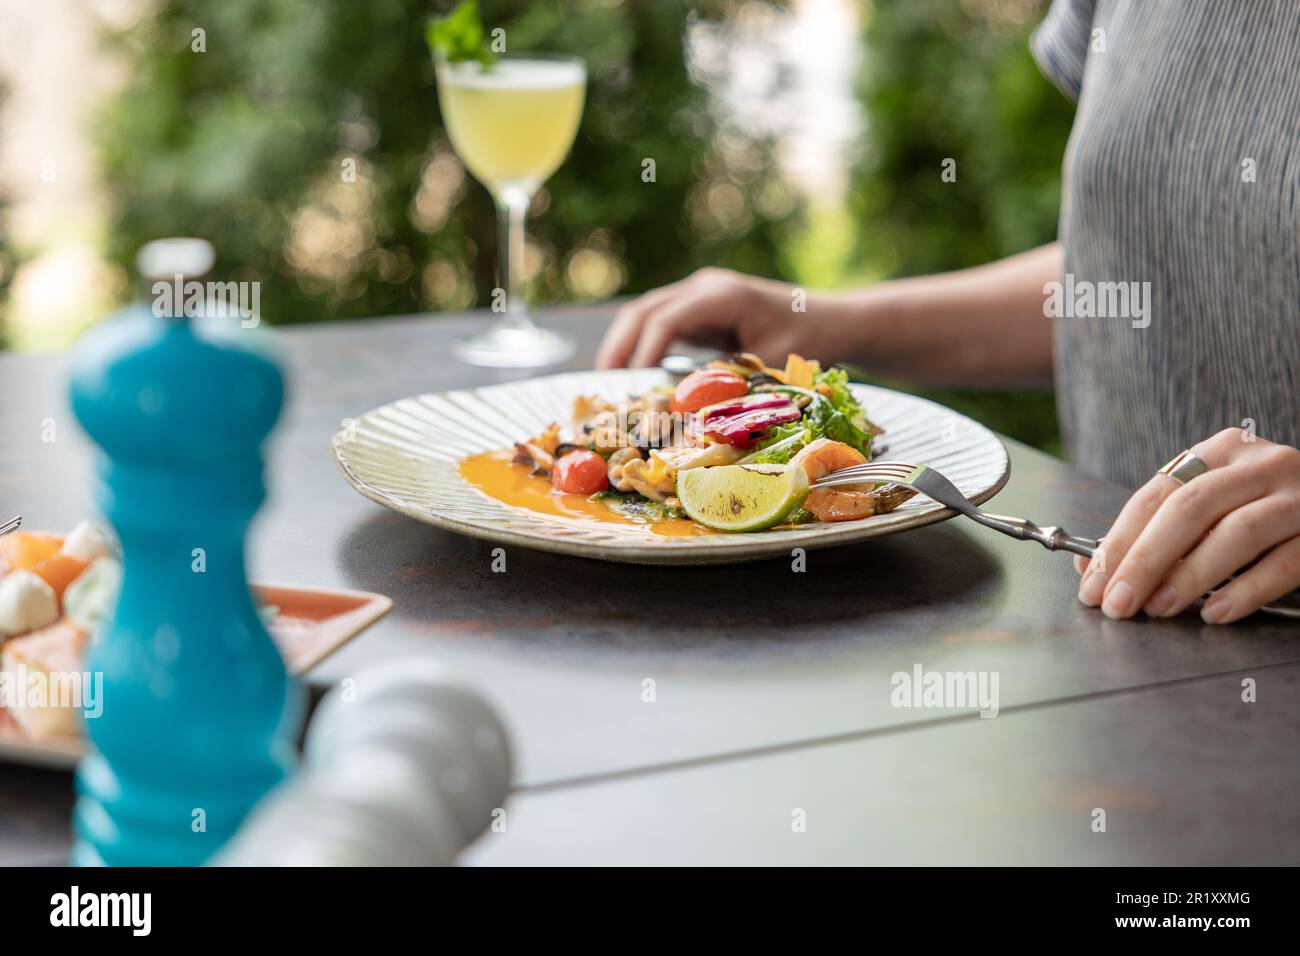 Les mains des femmes mangent de la salade de fruits de mer, les mains sont seulement visibles, table servie par le restaurant. Repas d'été et cocktail Banque D'Images